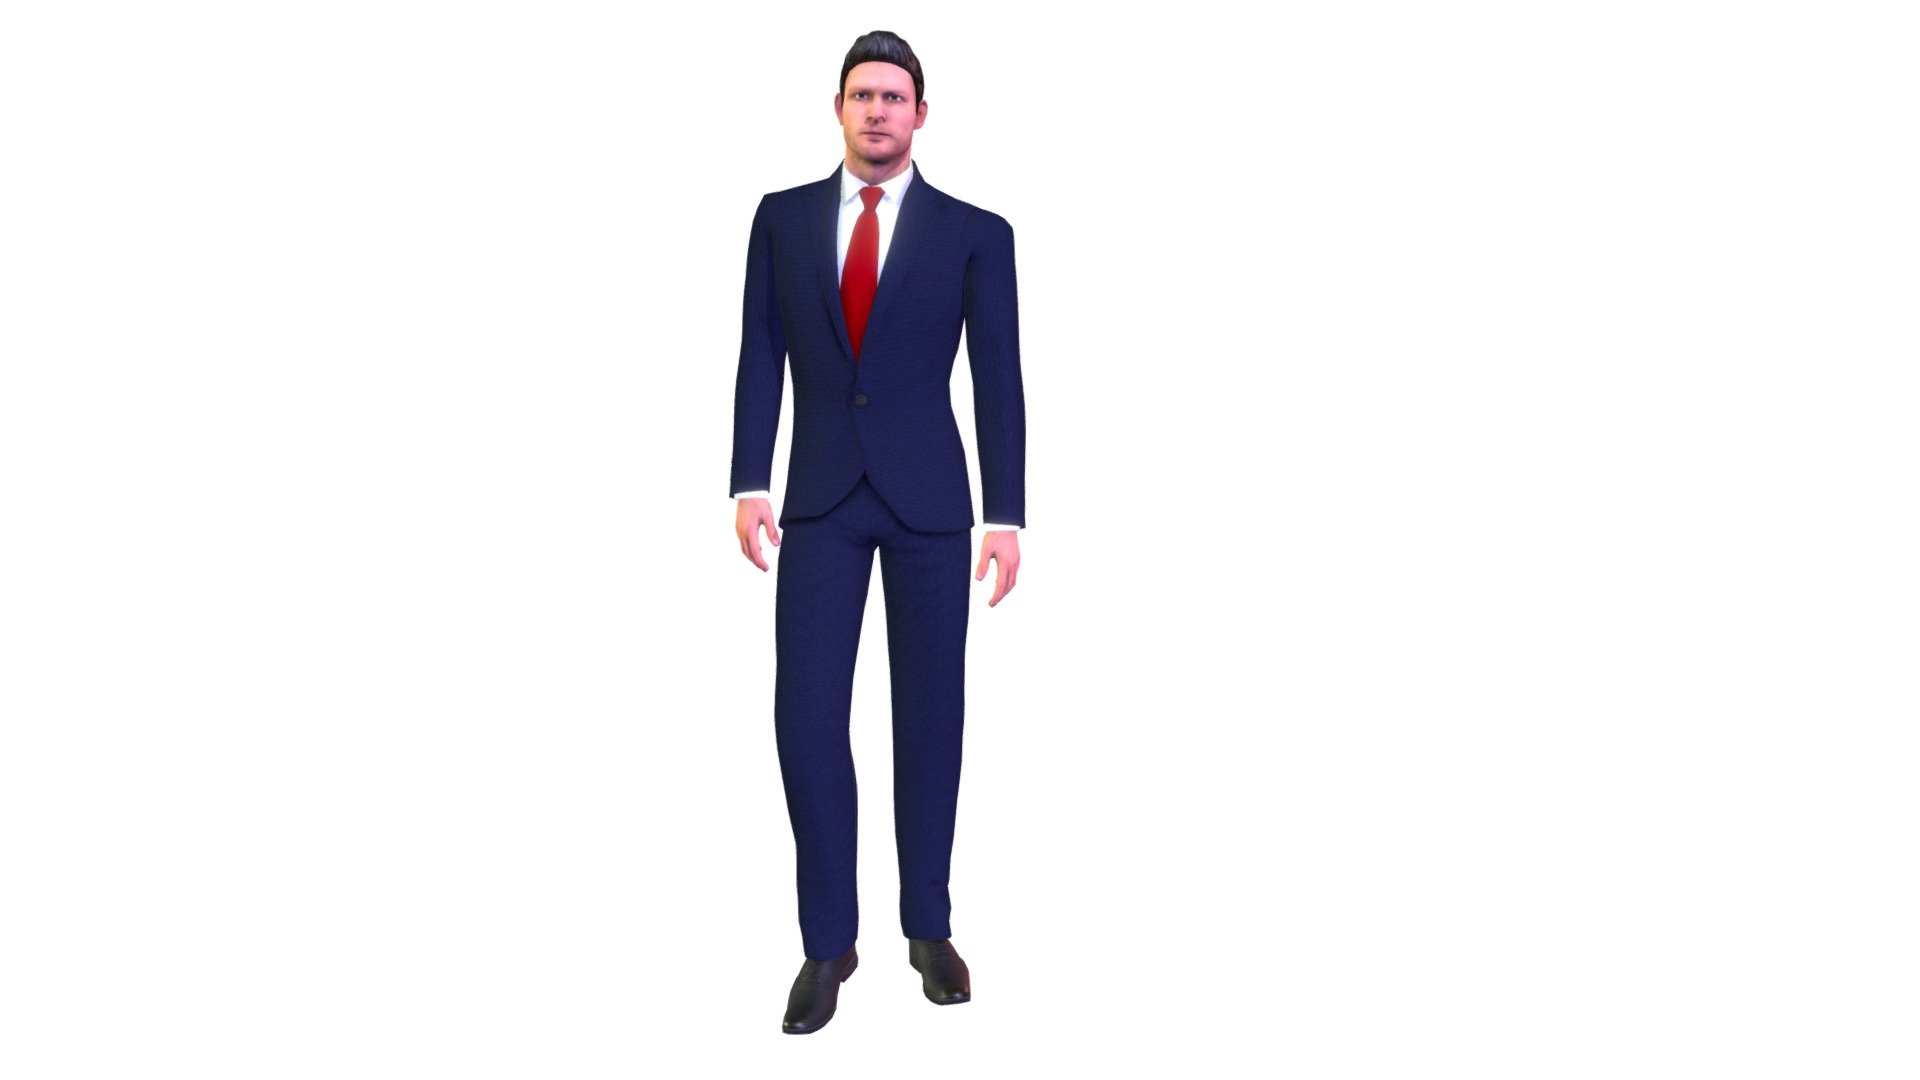 Gentleman Caramel Brown Suits Look Formal Stock Vector (Royalty Free)  1267590604 | Shutterstock